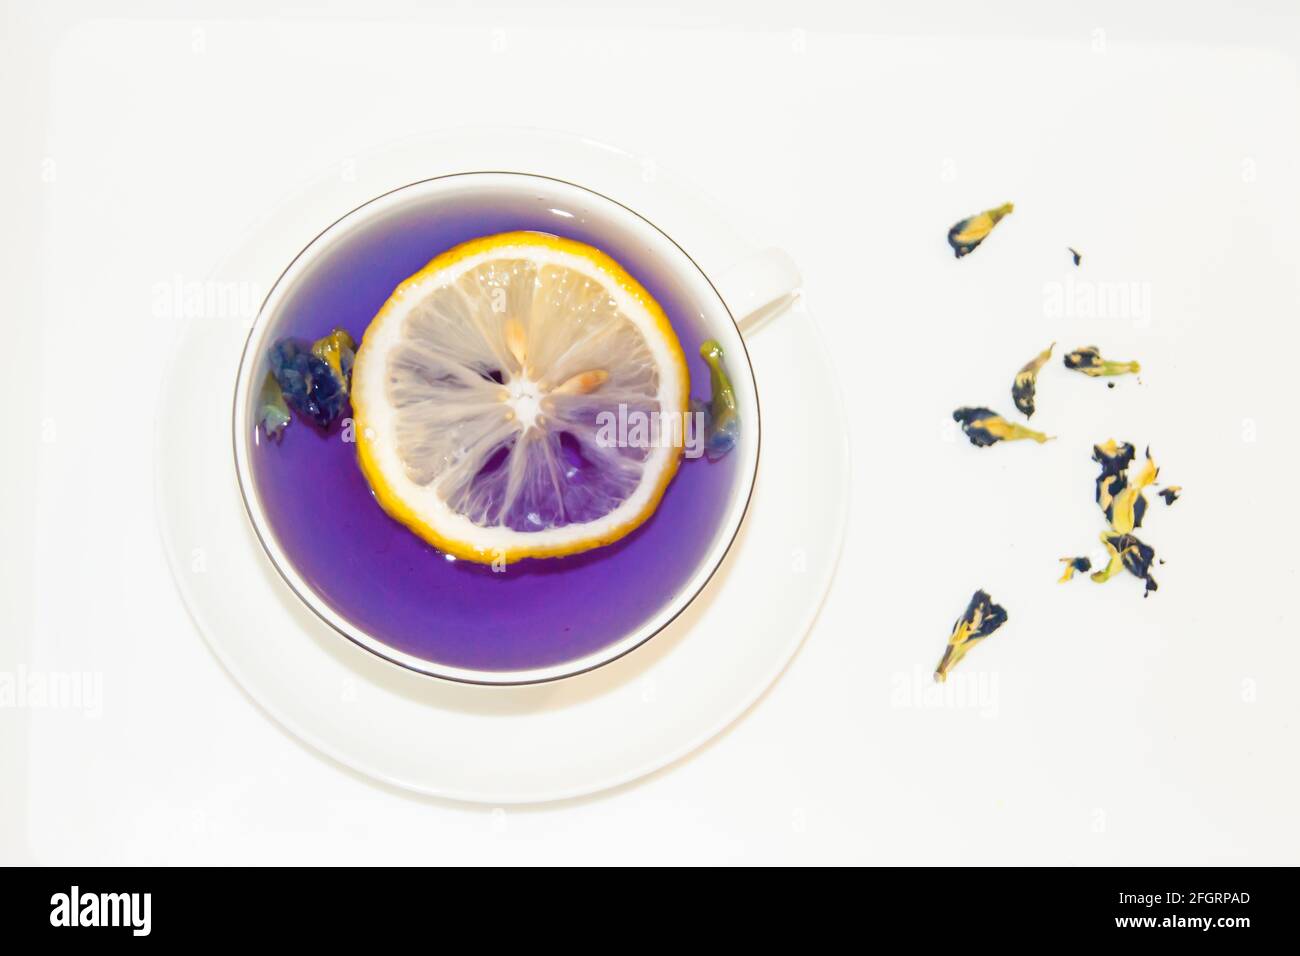 Die Stimmungsfarbe ist blau - blauer Tee mit Zitrone in einem weißen Becher, der auf einer weißen Untertasse und weißem Tablett steht. Kontrast. Nützliche Getränke, heilende Eigenschaft Stockfoto